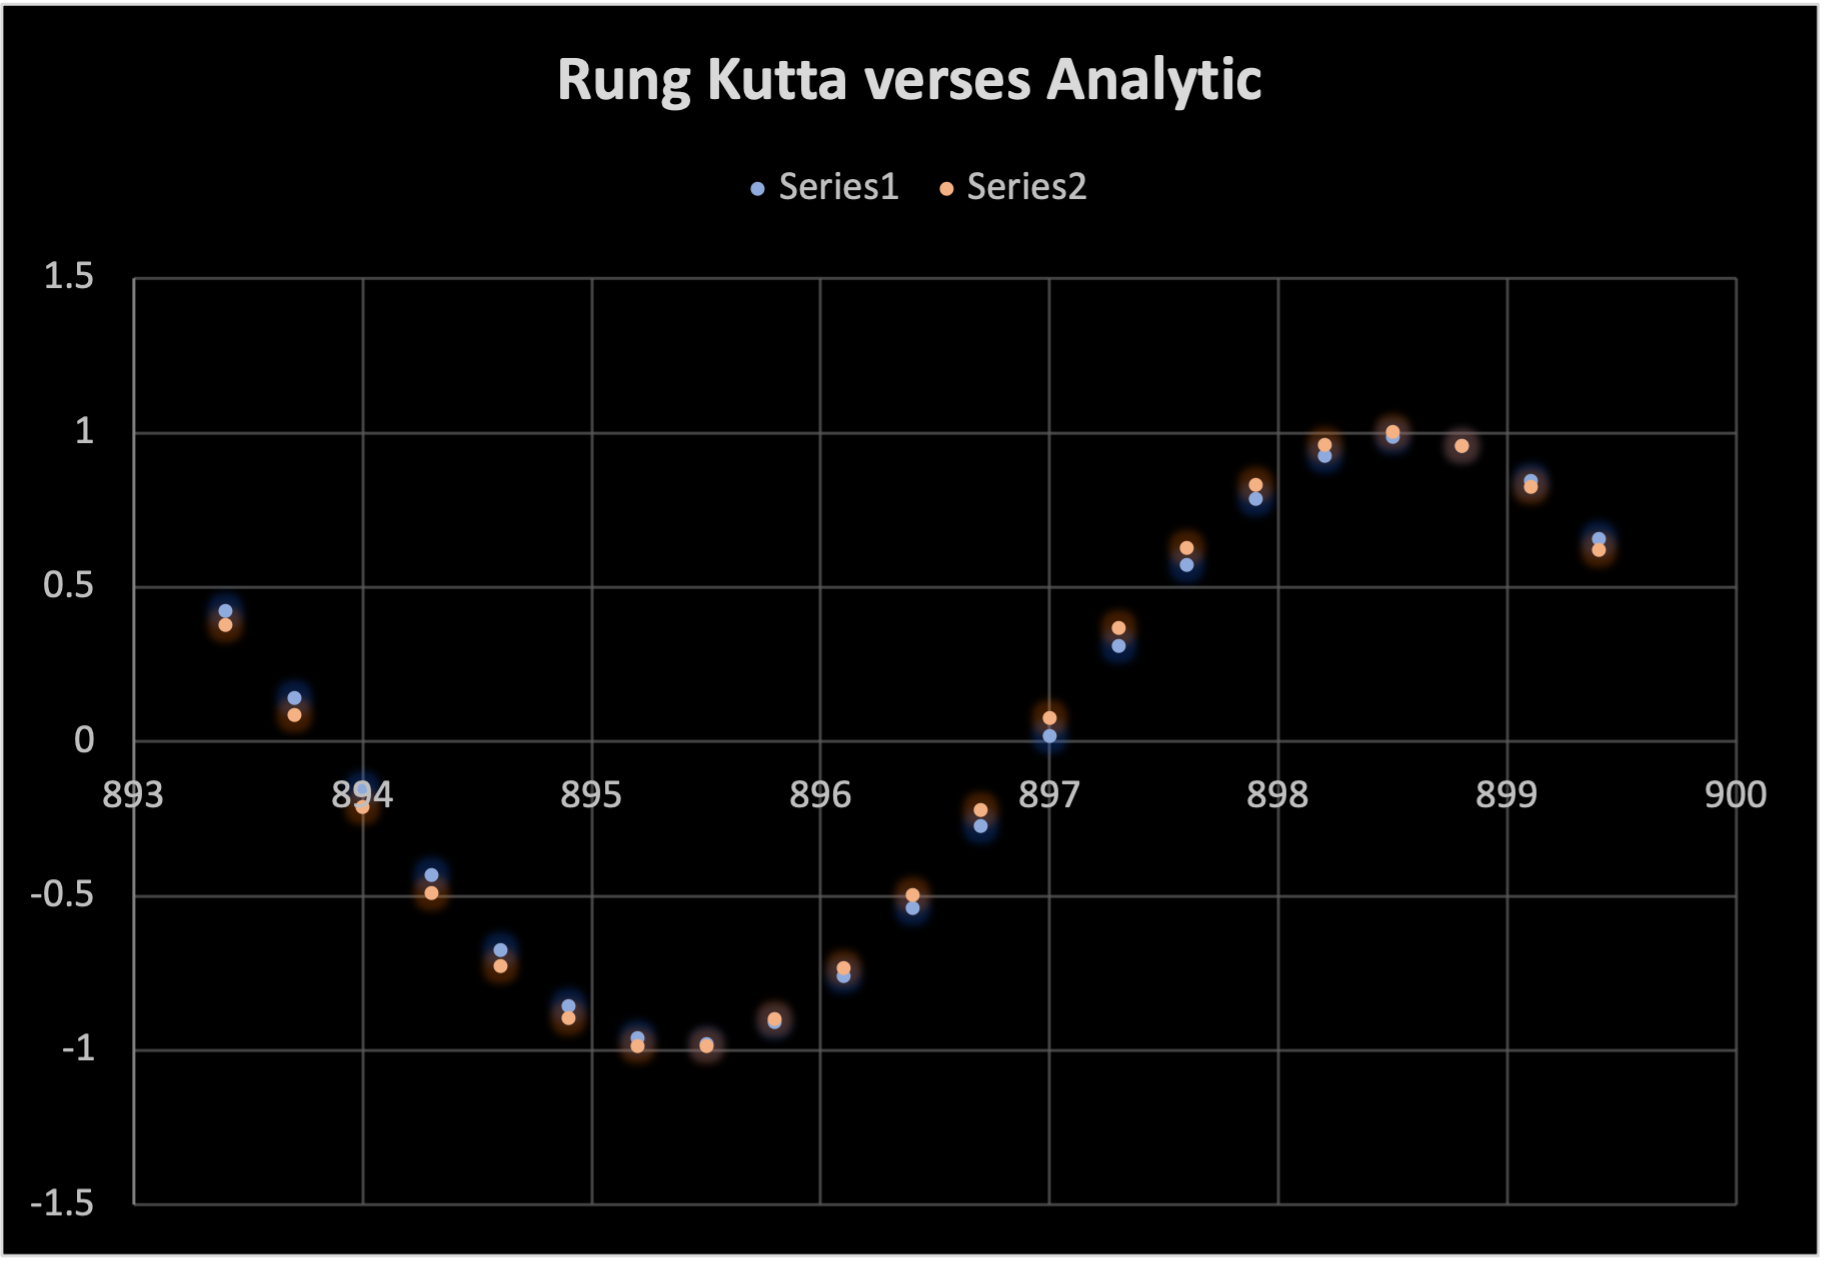 Rung Kutta verses Analytic.png